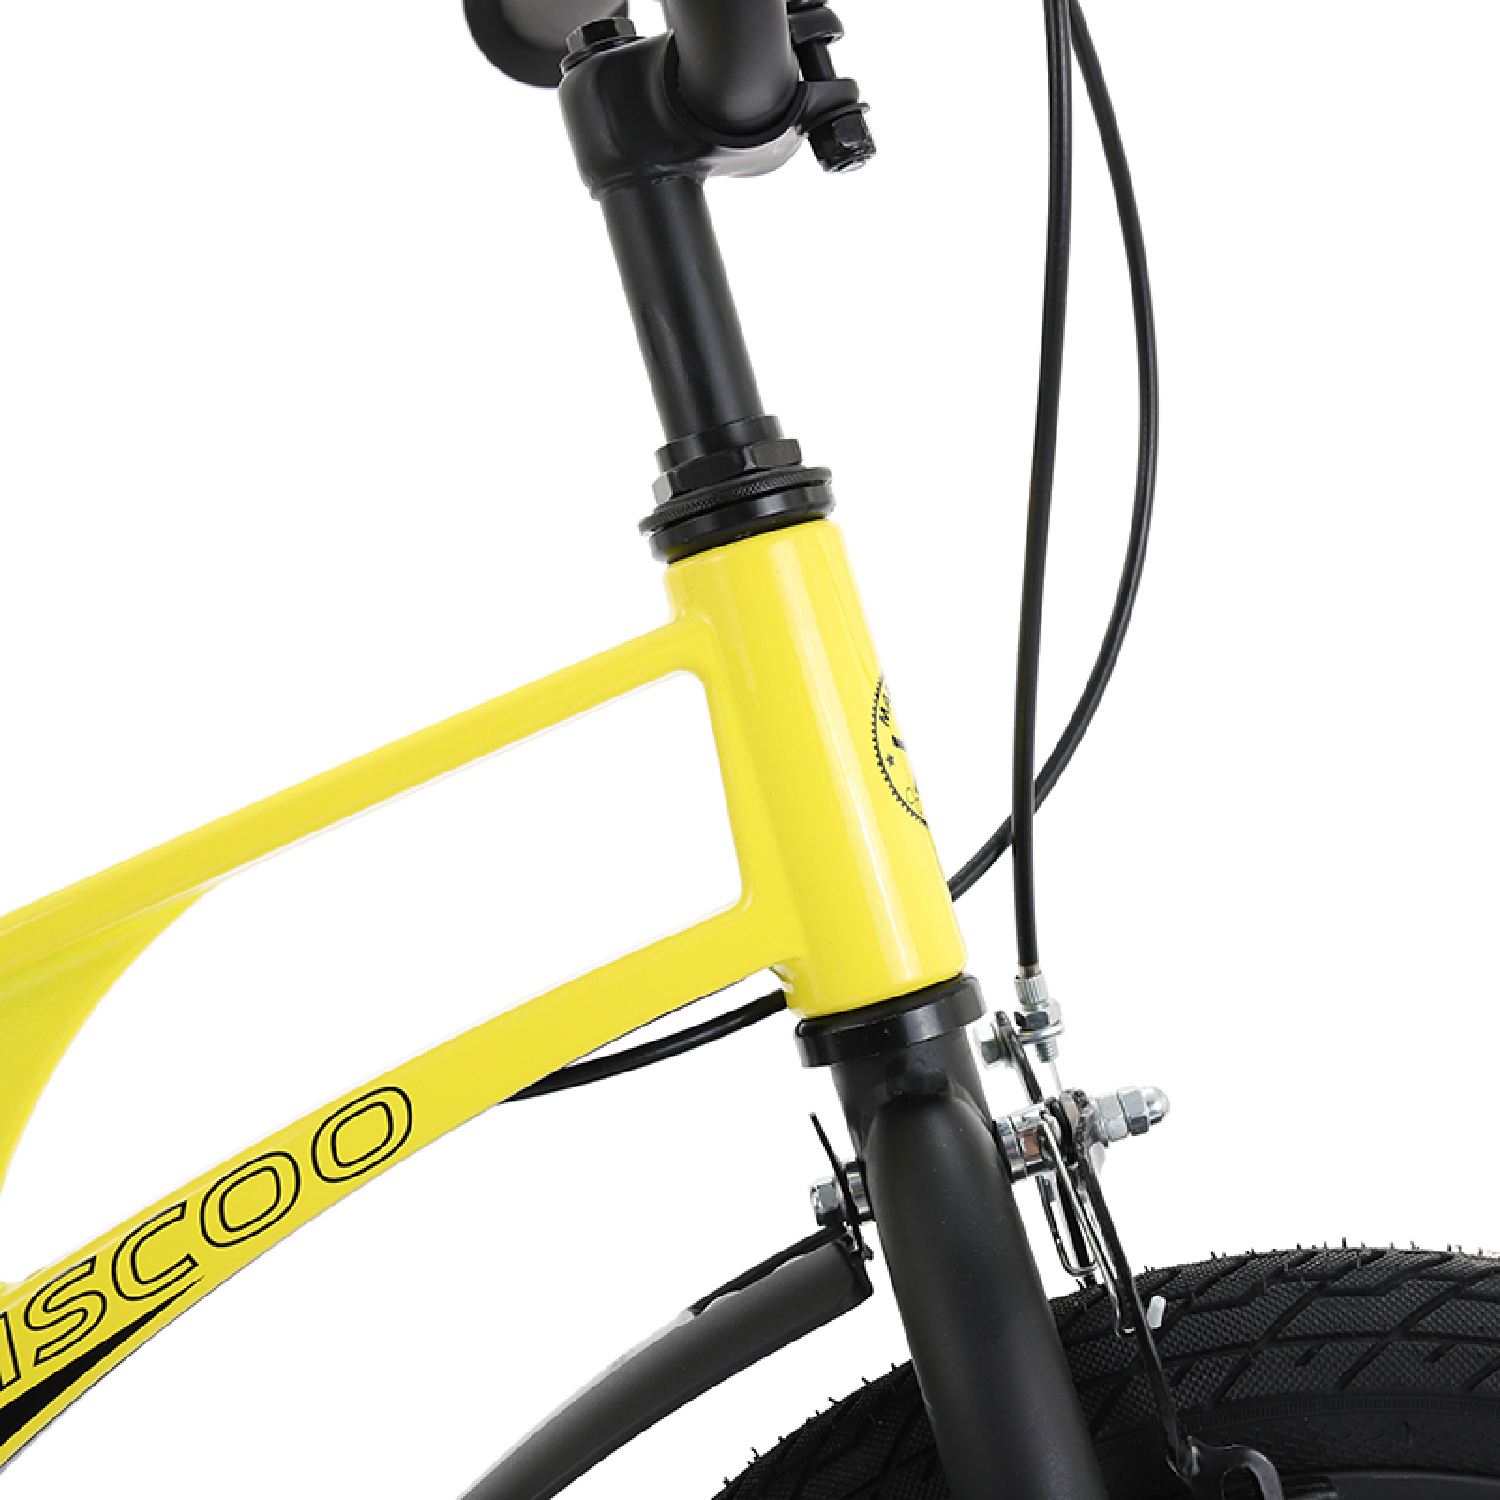 Велосипед MAXISCOO Air Standart Plus 2023 Желтый